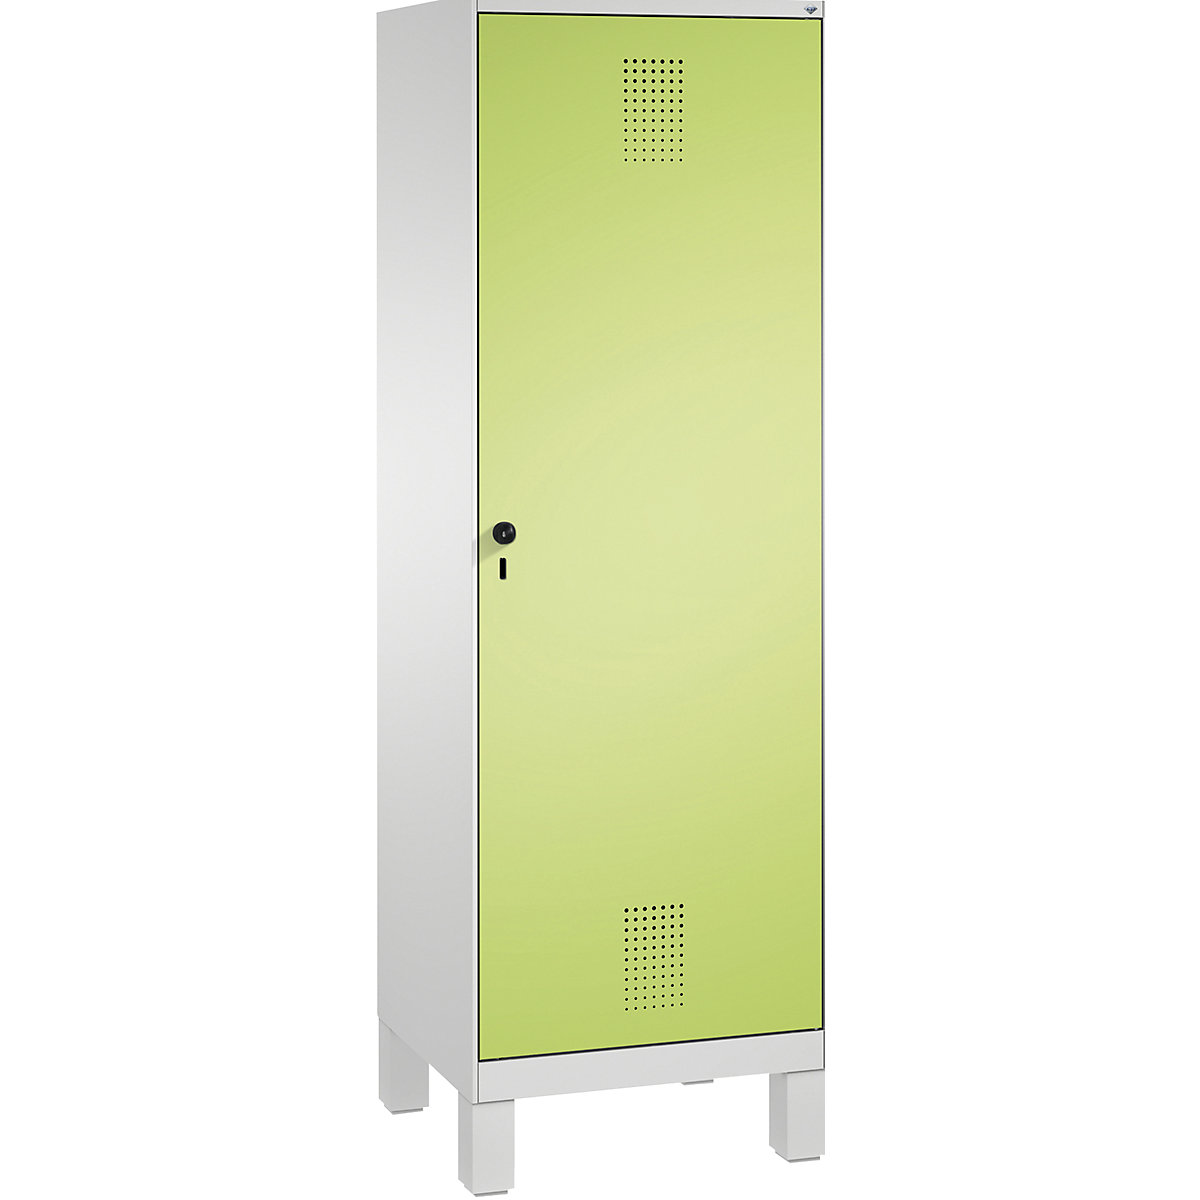 EVOLO öltözőszekrény, ajtó 2 fülke előtt, lábakkal – C+P, 2 fülke, 1 ajtó, fülkeszélesség 300 mm, világosszürke / viridinzöld-6